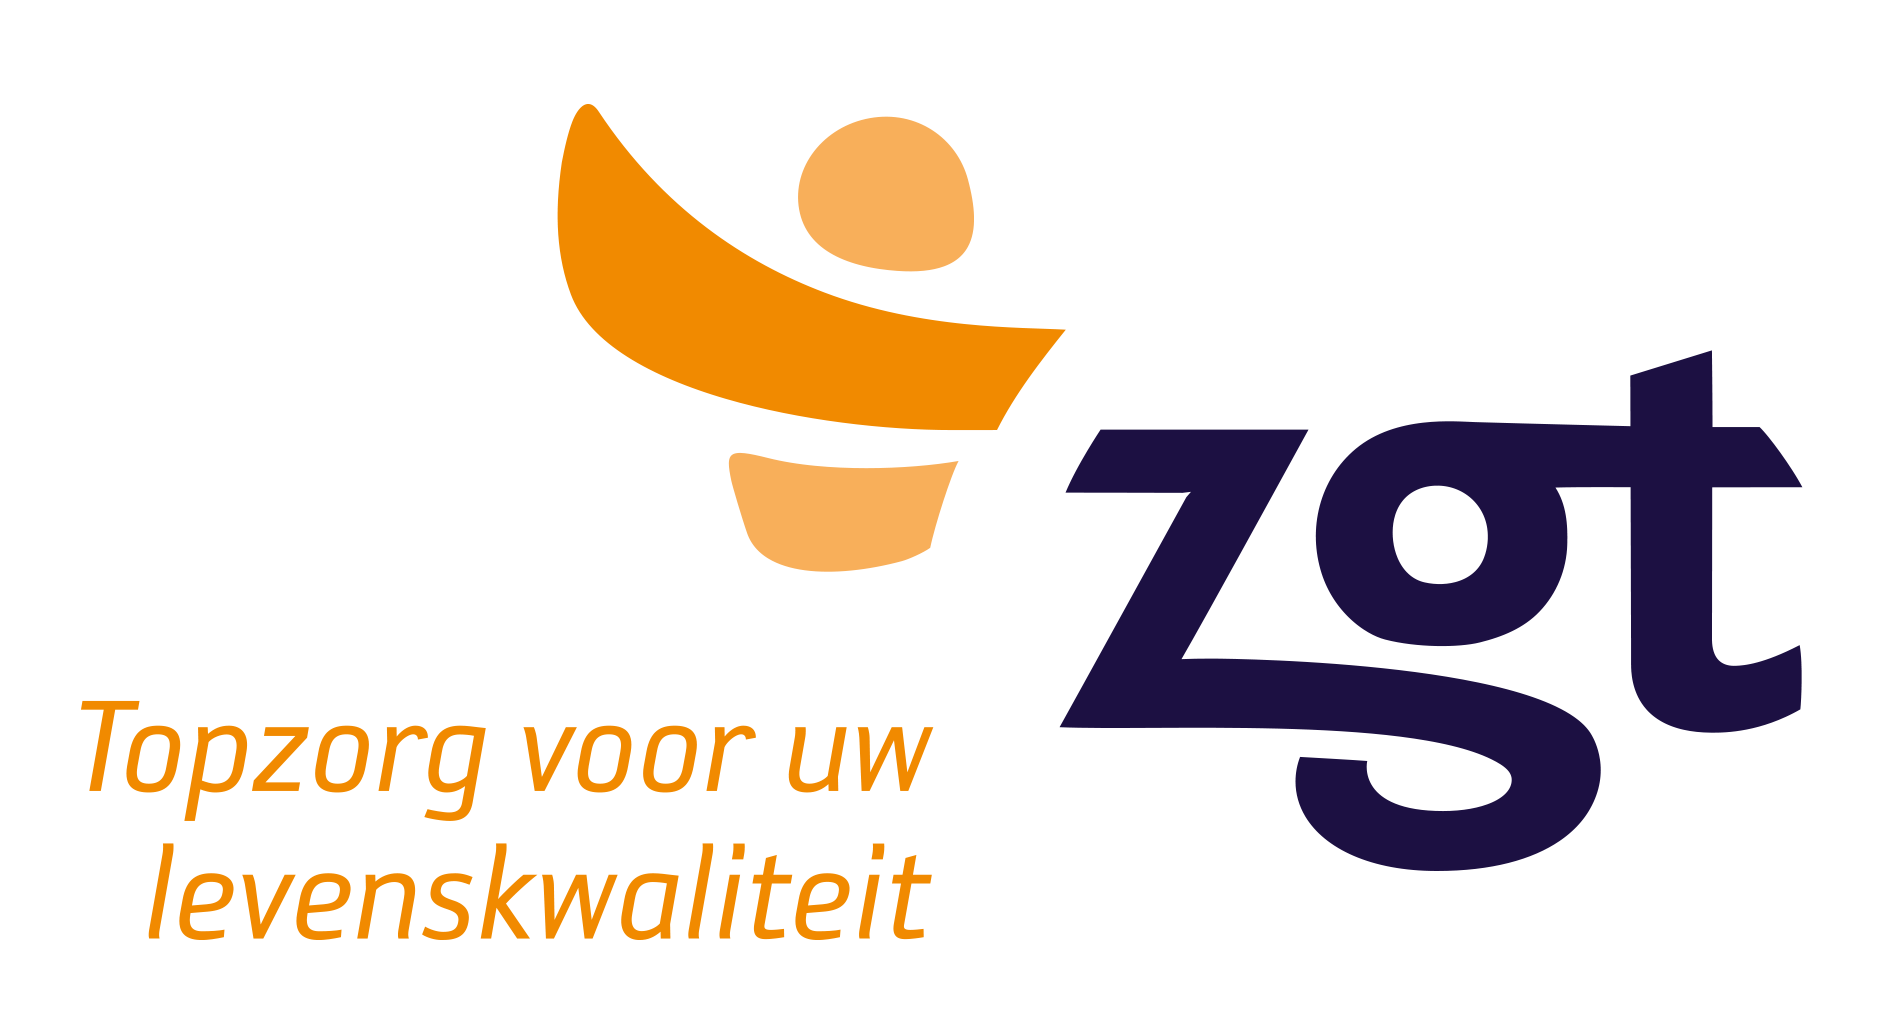 Logo ZGT, Topzorg voor uw levenskwaliteit